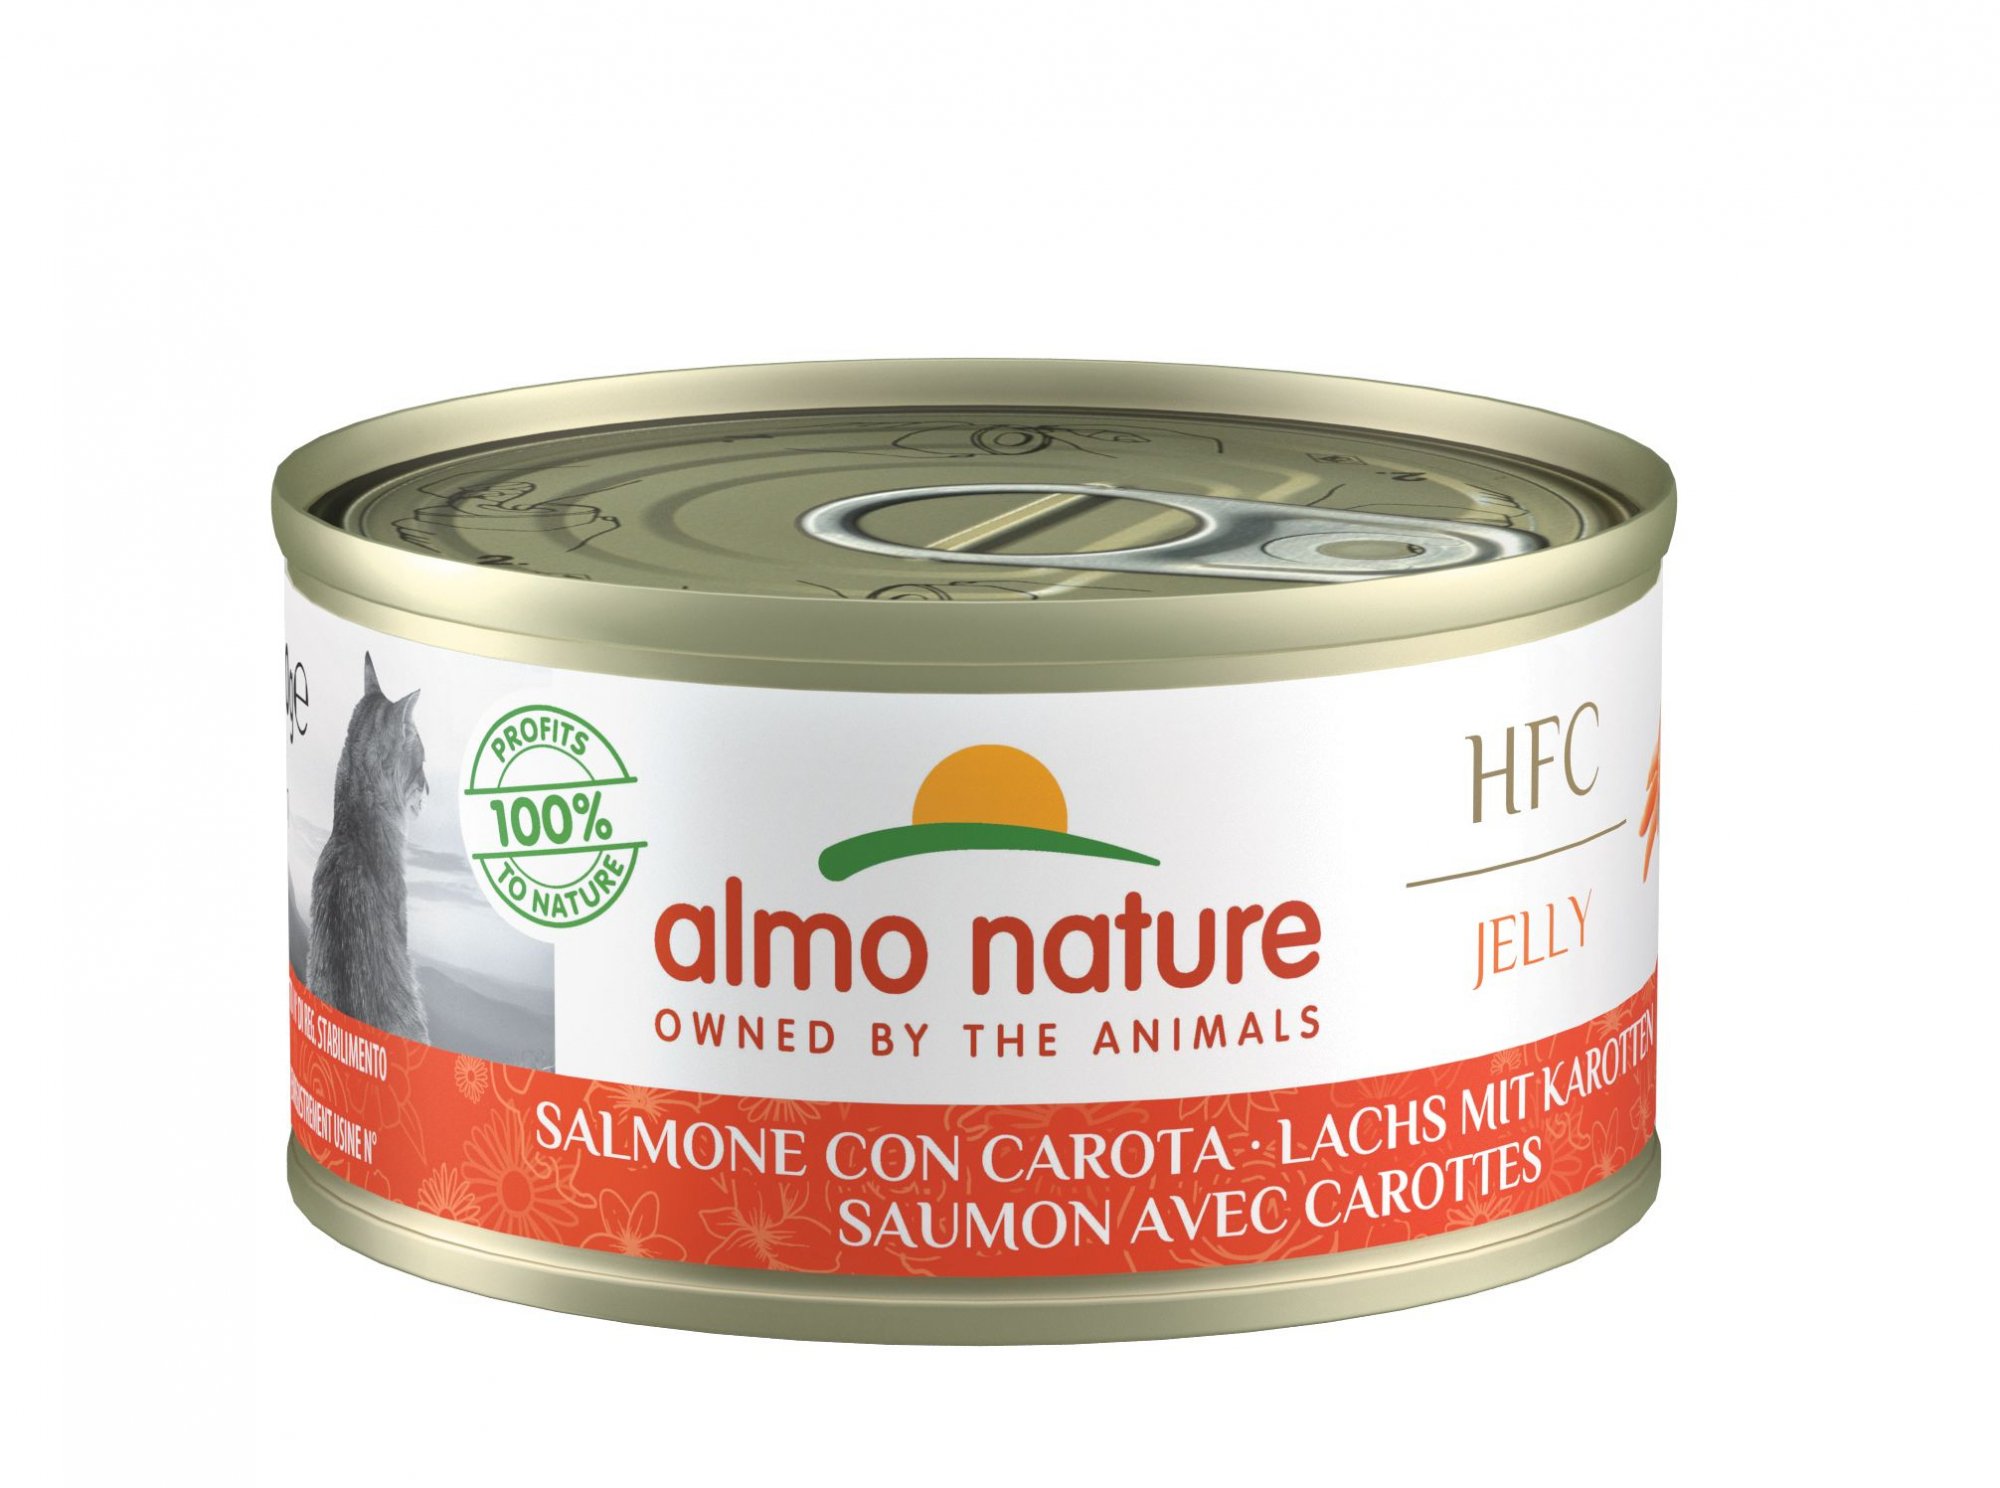 ALMO NATURE HFC Natural o gelatina Latas para gatos - 16 recetas